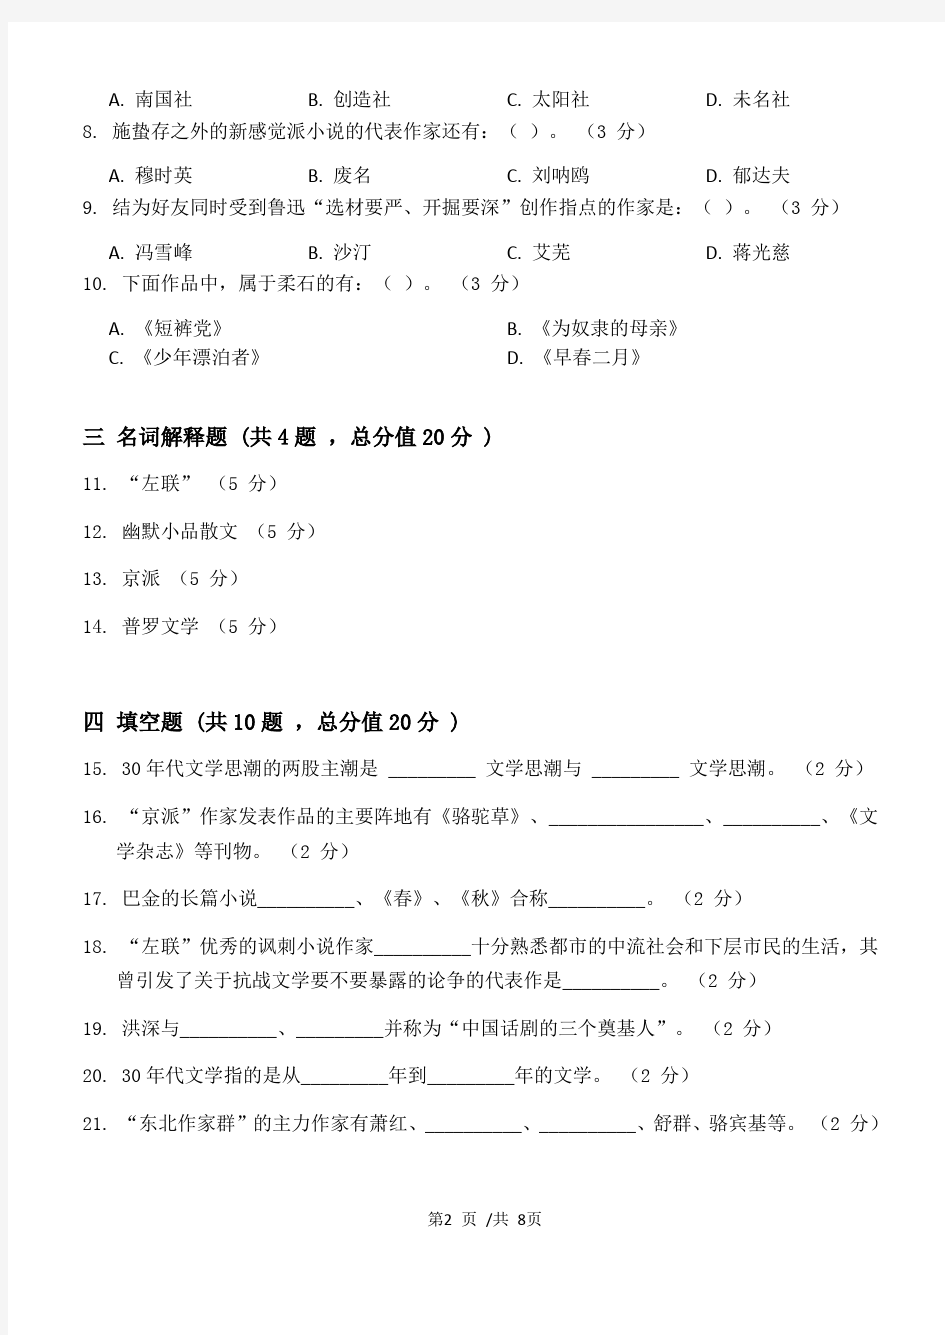 中国现代文学第2阶段练习题江大考试题库及答案一科共有三个阶段,这是其中一个阶段。答案在最